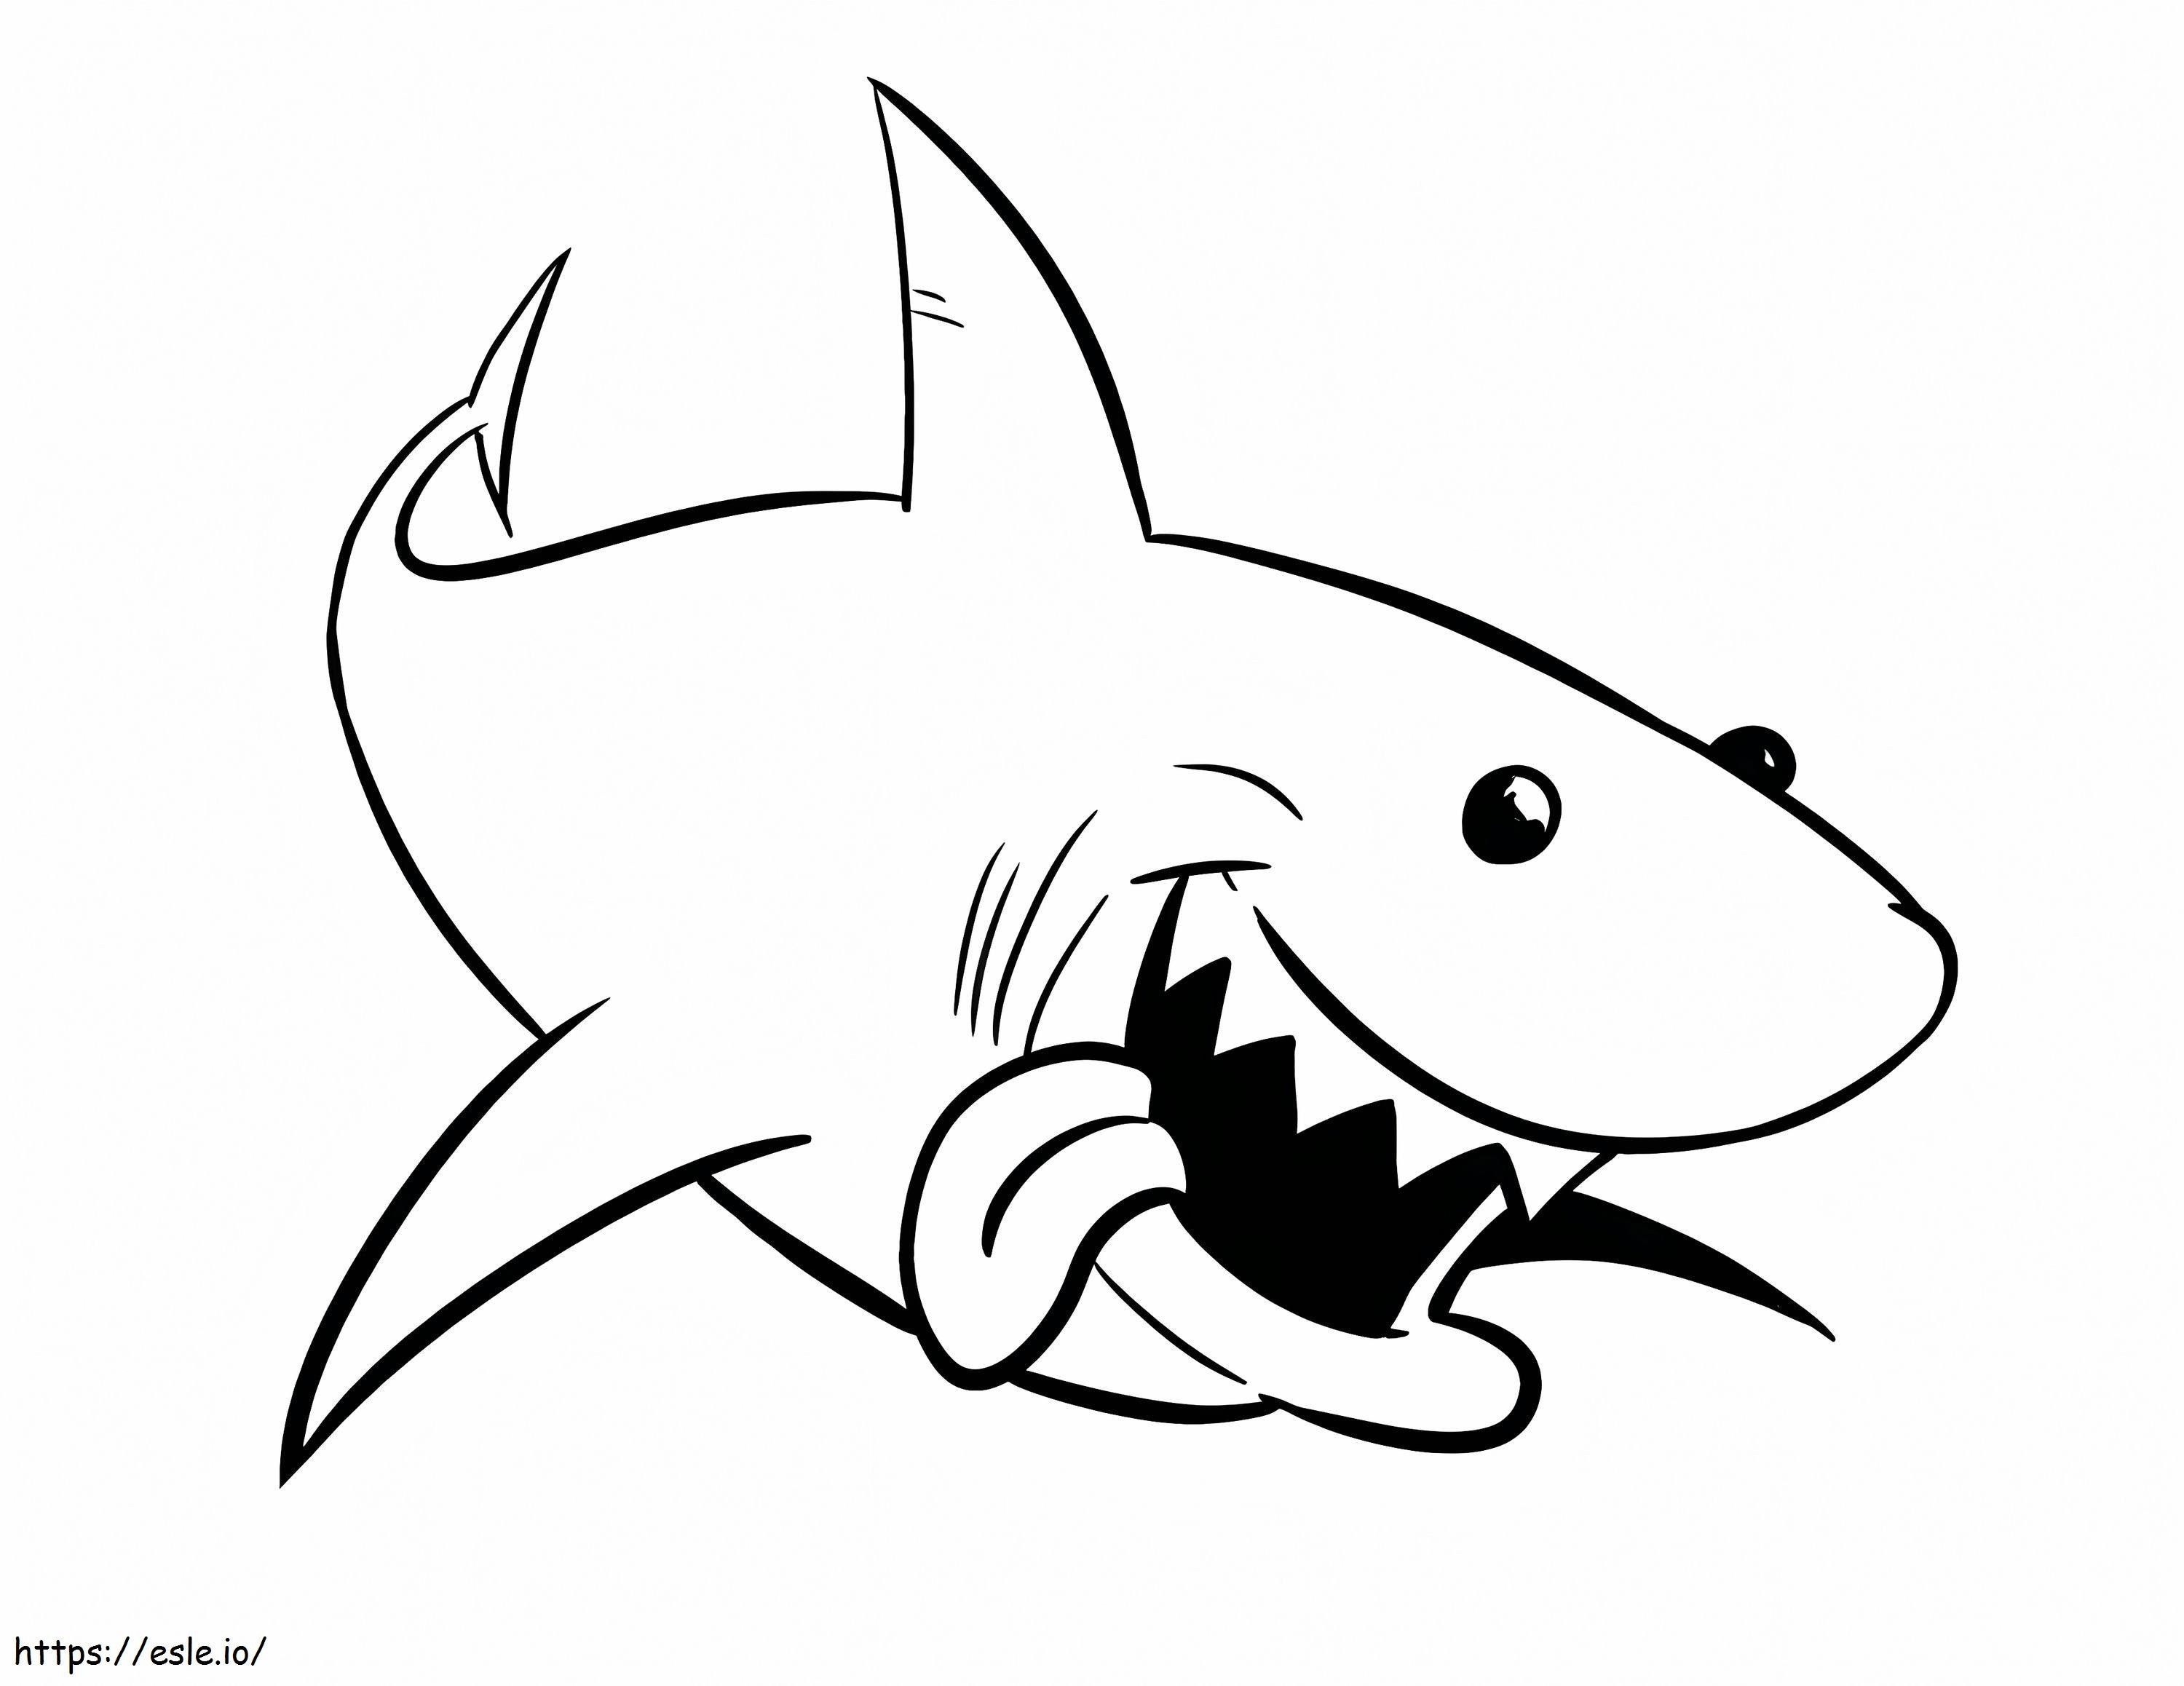 1541378982 Completo D792570 Squalo toro Grande squalo bianco Nuovo disegno di squalo toro su del grande squalo bianco da colorare Immagini antiche di squalo toro da colorare da colorare